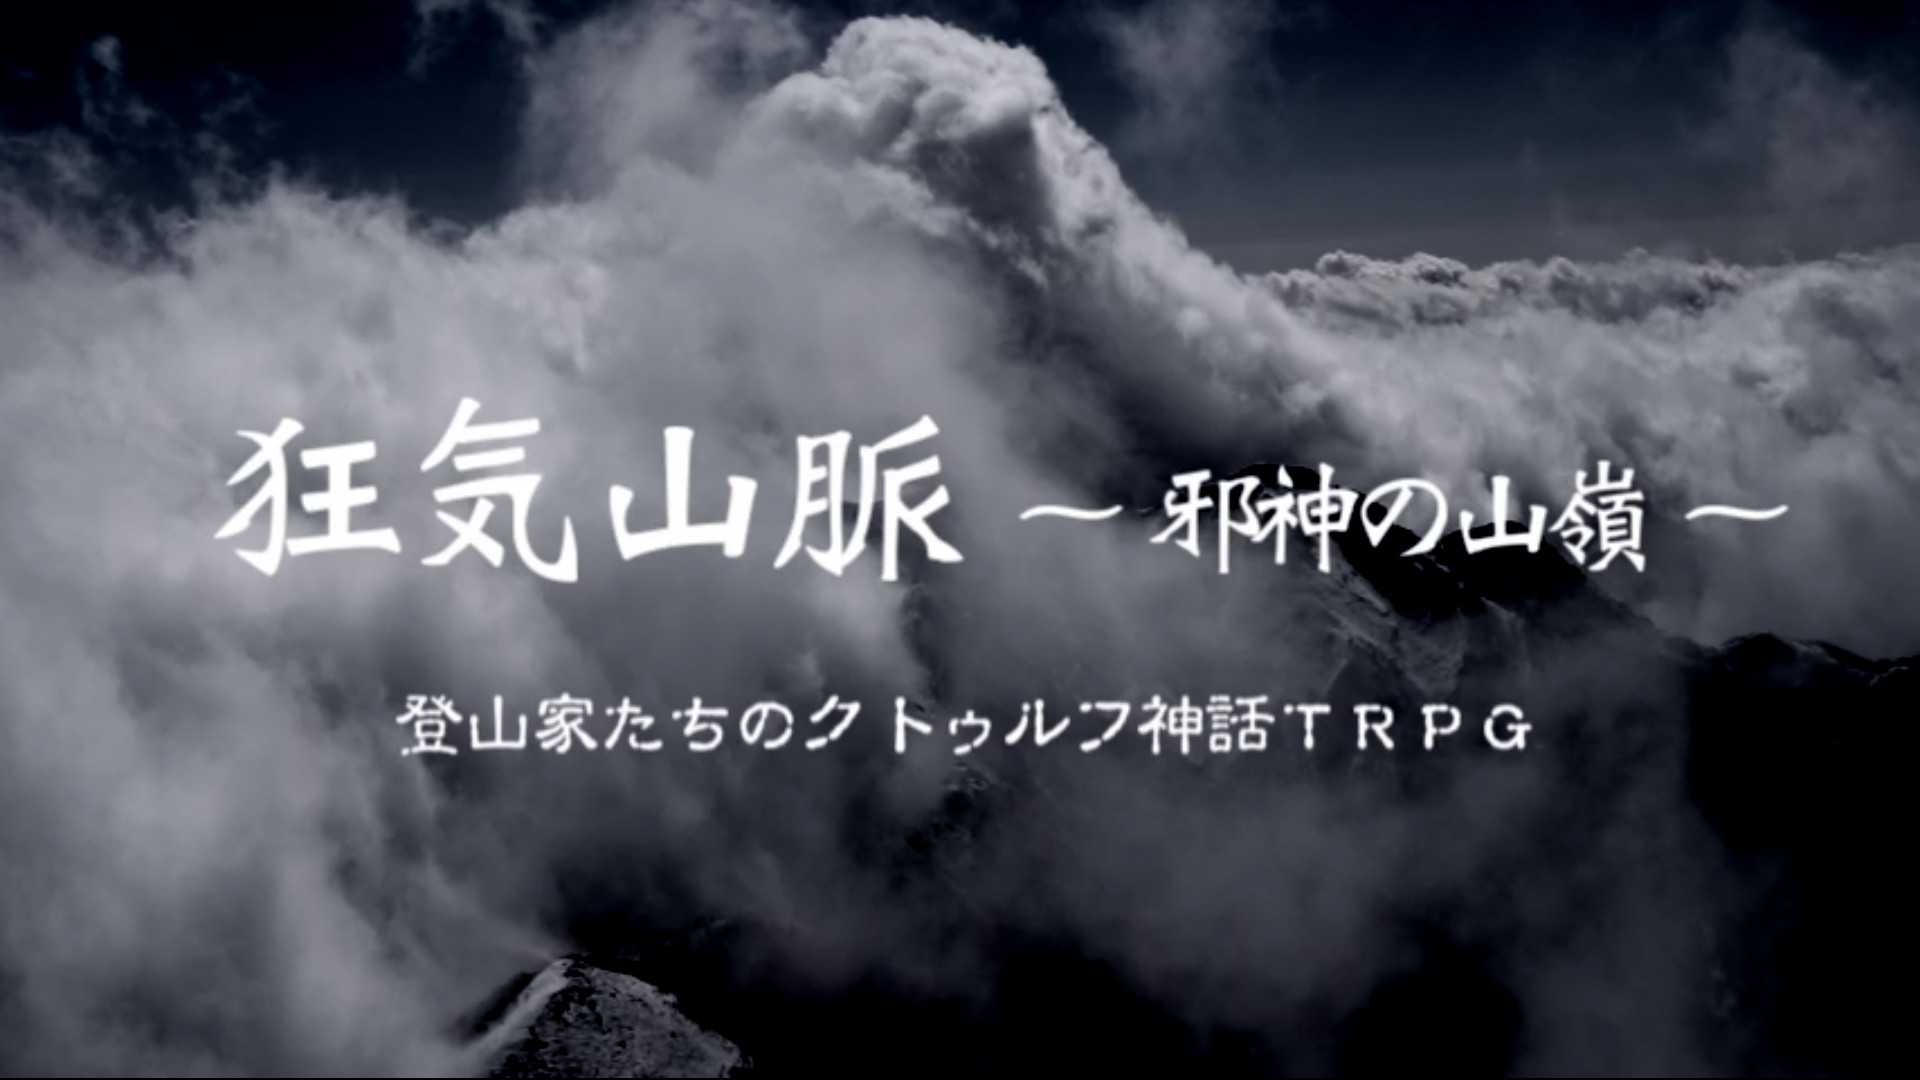 リアル雪山でクトルゥフ神話trpgをする狂気のセッション 異色のtrpg動画 登山家たちのクトゥルフ神話trpg がガチ登山知識満載で面白い